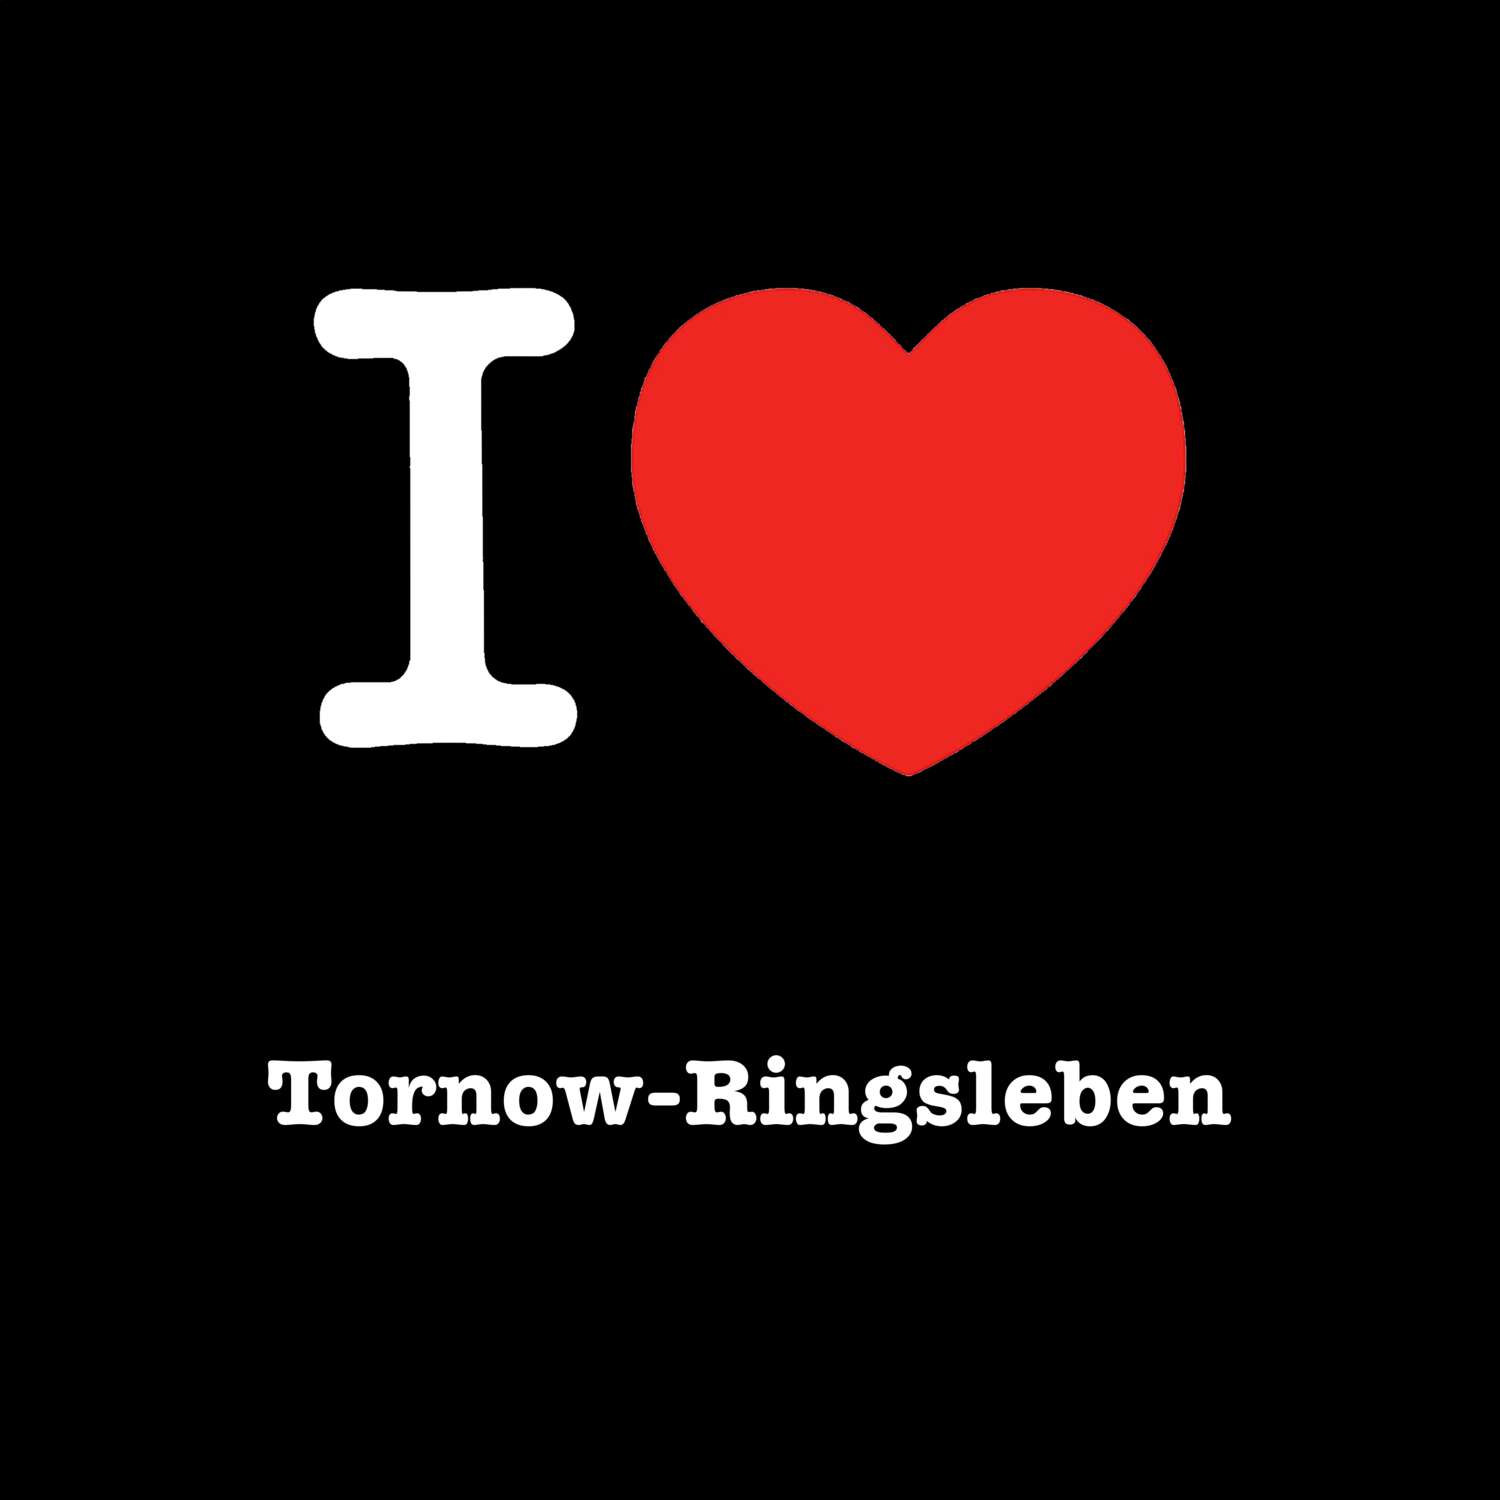 Tornow-Ringsleben T-Shirt »I love«